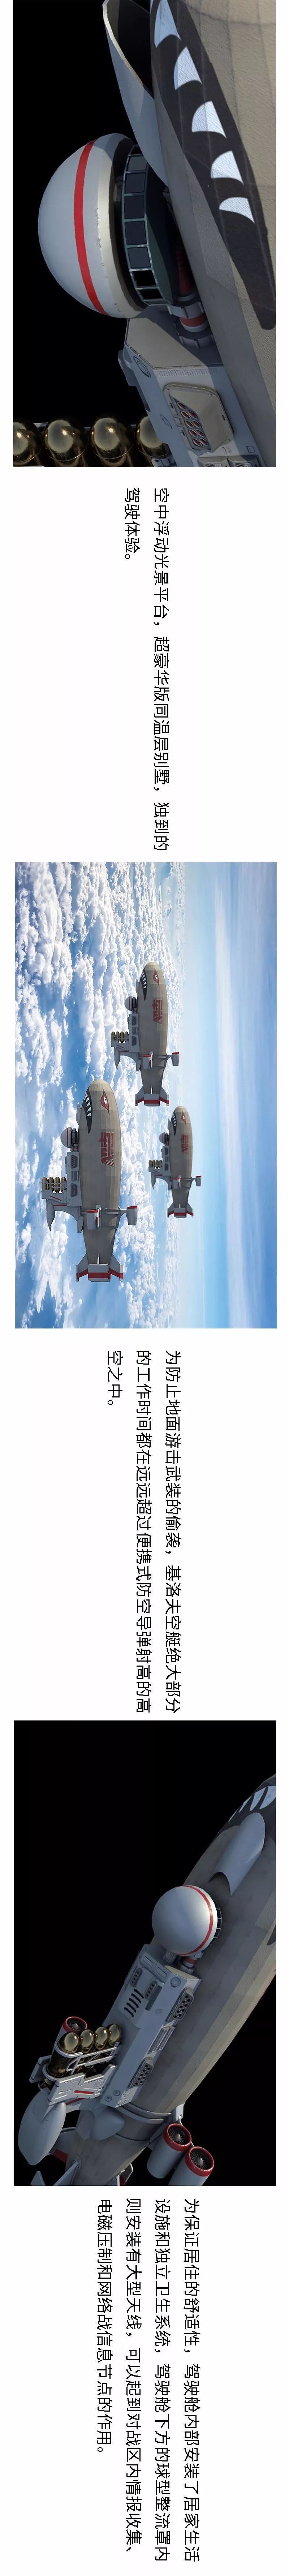 至今没有空中炮艇机的中国能否通过魔改飞艇赶上美国水准？| 军武CG - 11